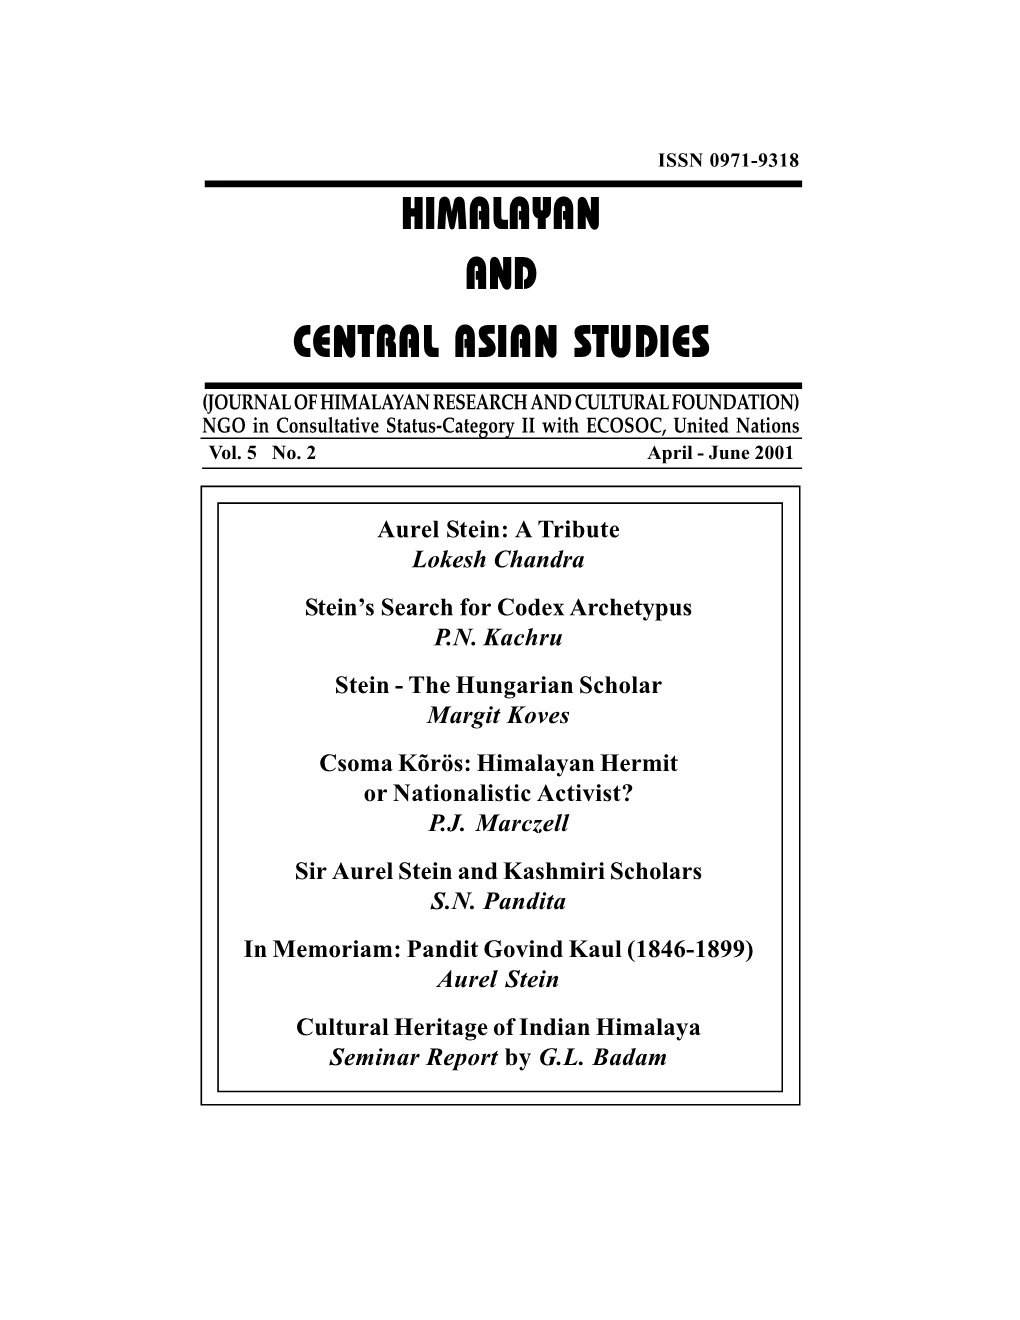 Himalayan and Central Asian Studies